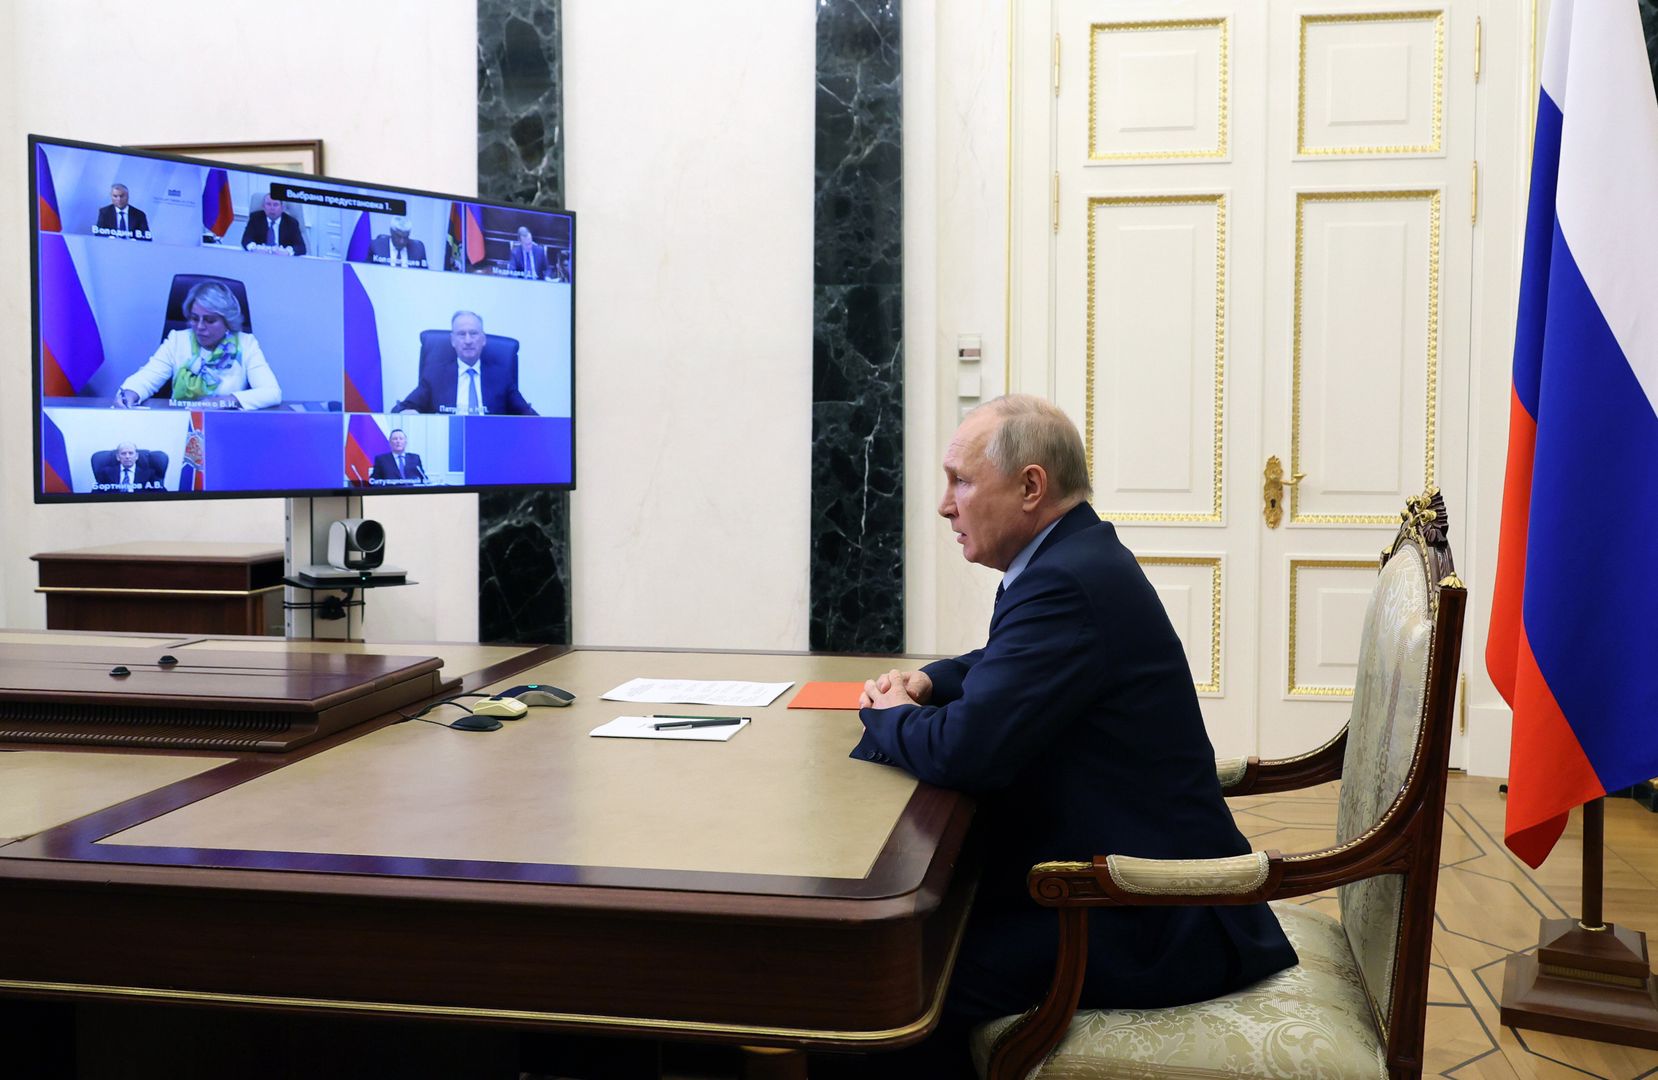 Poparcie dla Putina w Rosji nadal wysokie. Psycholog wyjaśnia